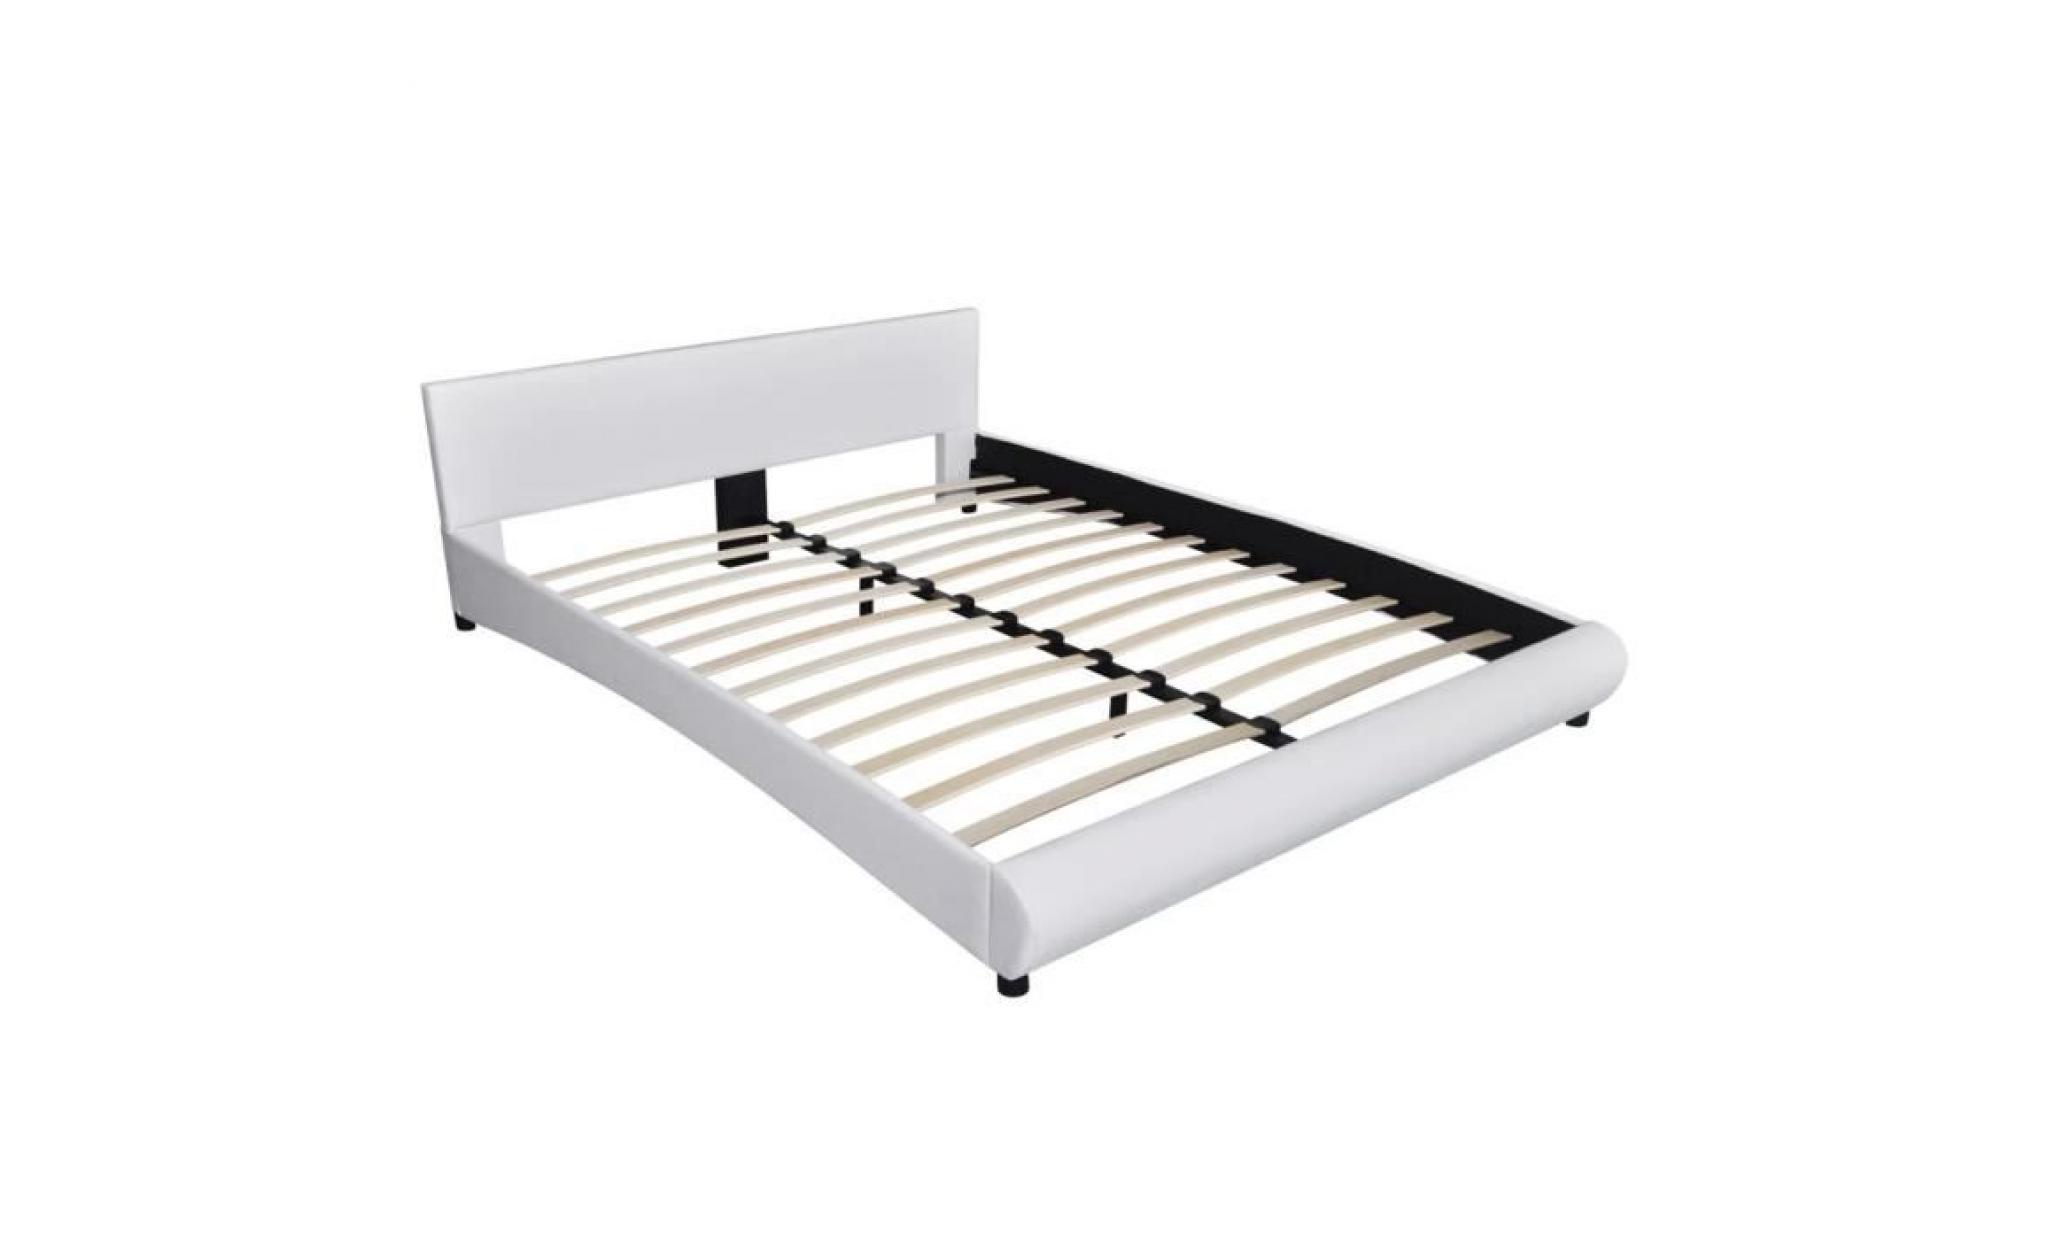 lit 160 x 200 cm structure de lit lit adulte lit enfant lit contemporain scandinave cuir artificiel blanc pas cher